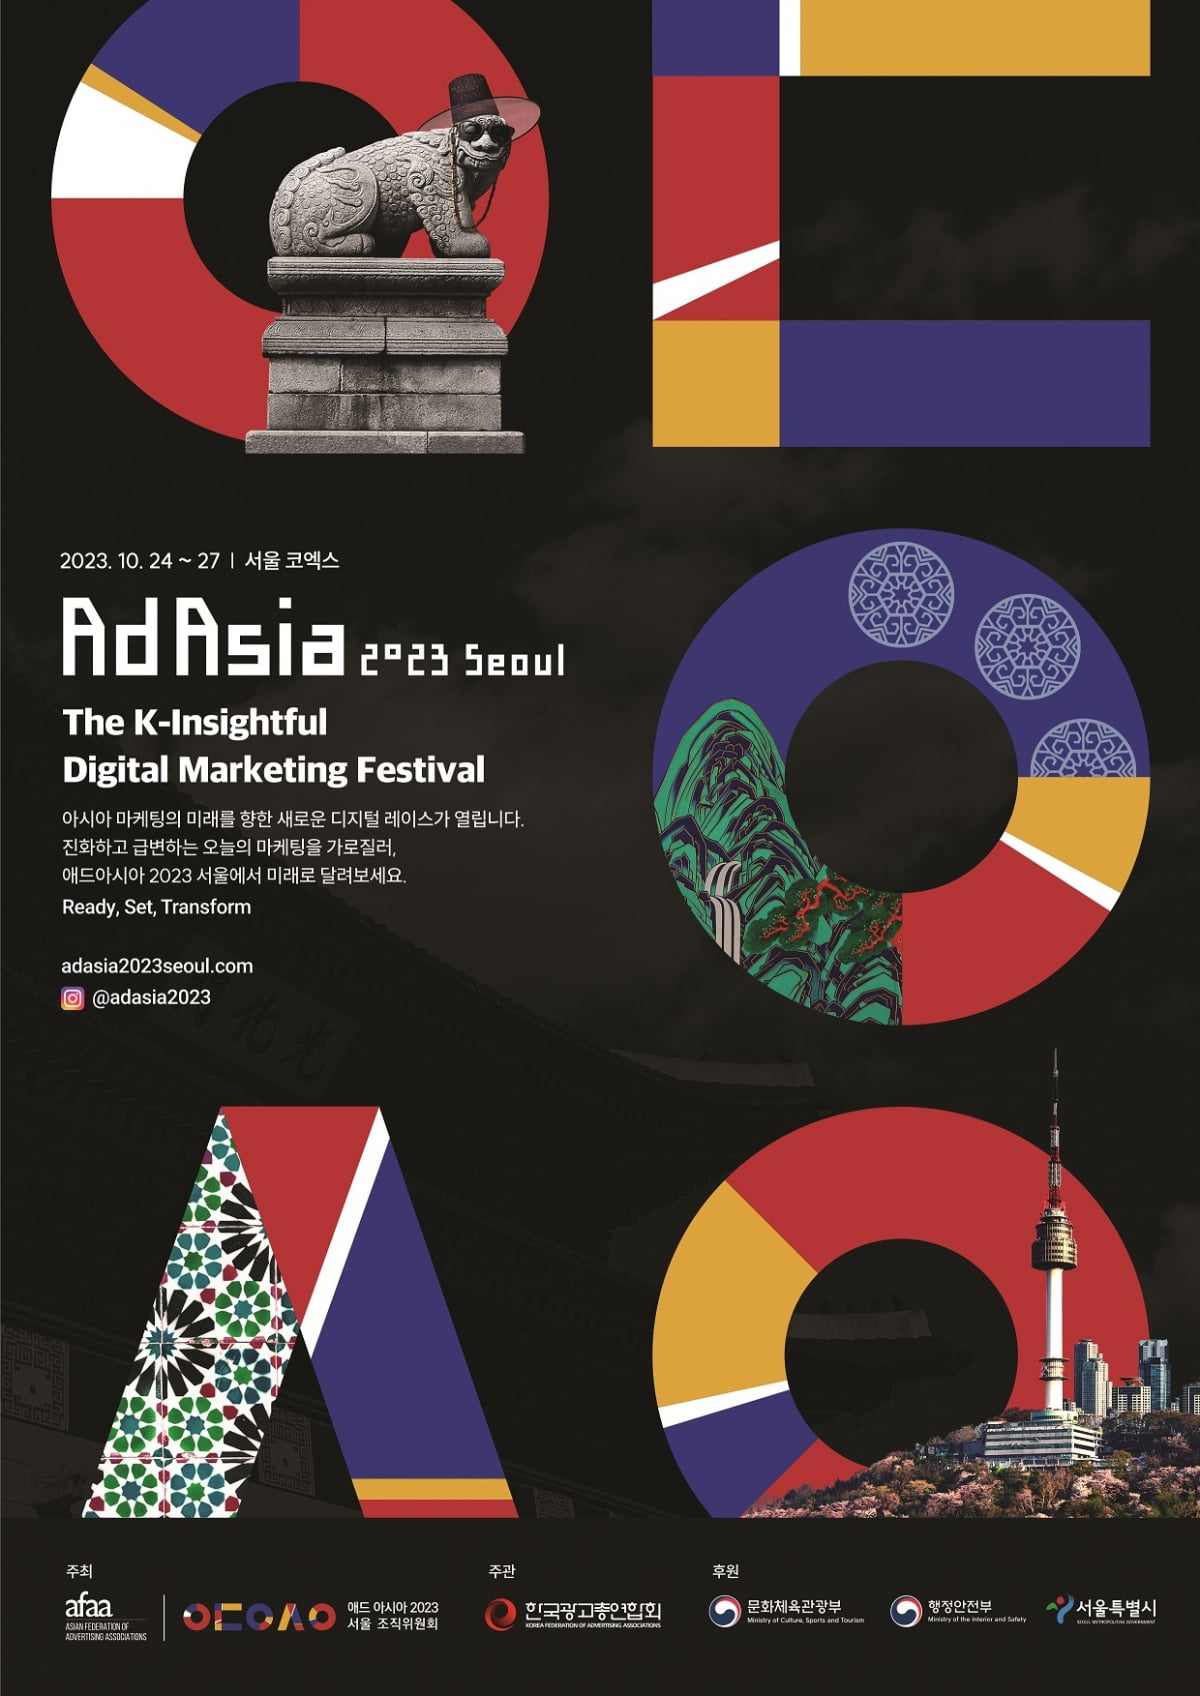 아시아 최대 광고 디지털 마케팅 페스티벌 '애드아시아 2023 서울'이 오는 25일 서울 삼성동 코엑스에서 공식 개막한다.사진=애드아시아 서울 조직위